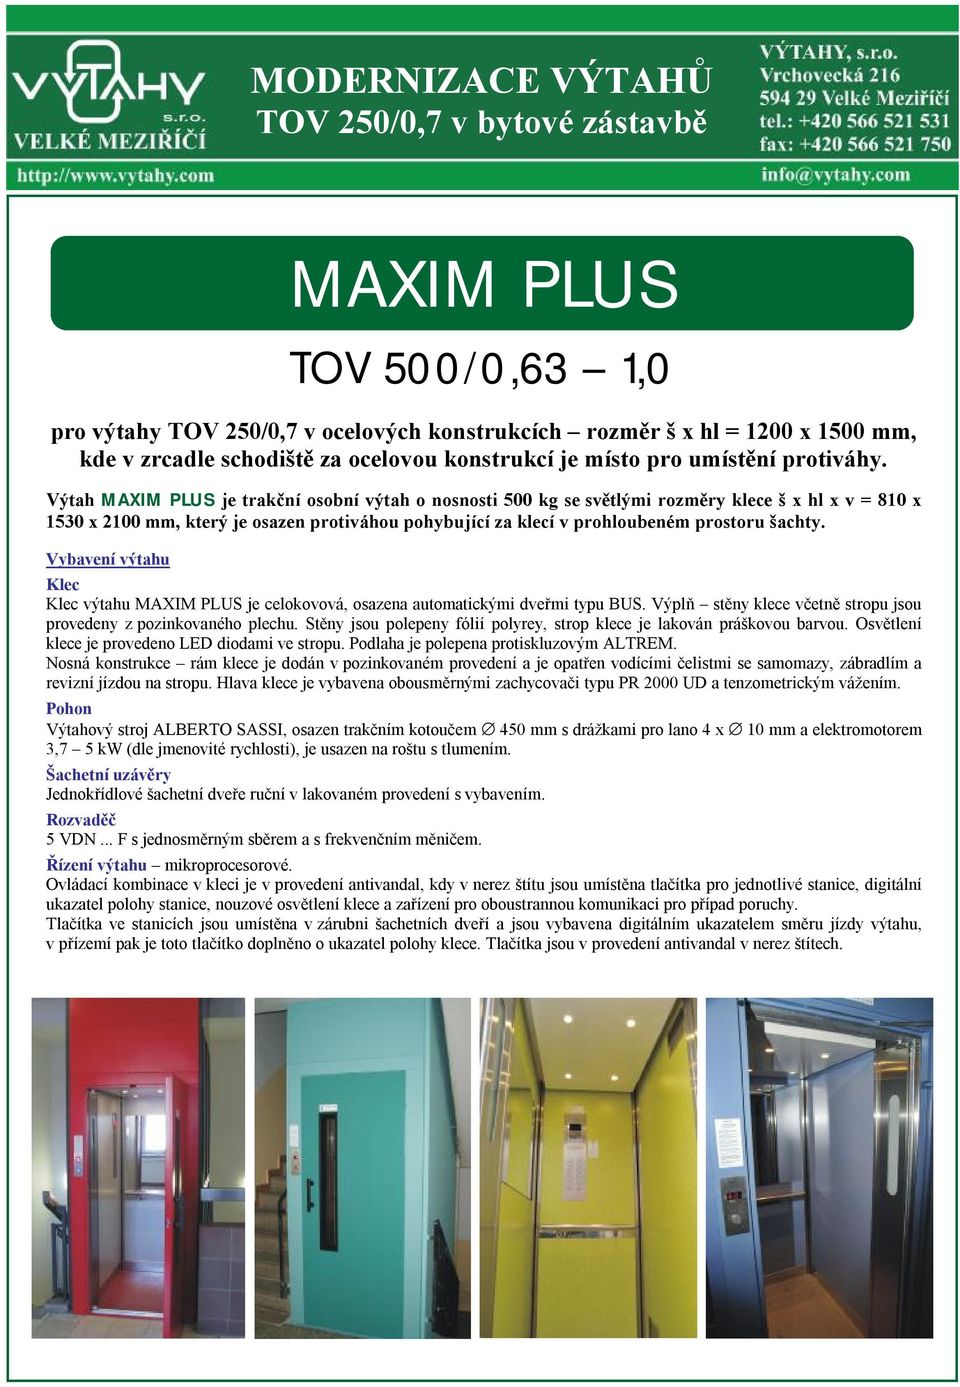 Výtah MAXIM PLUS je trakční osobní výtah o nosnosti 500 kg se světlými rozměry klece š x hl x v = 810 x 1530 x 2100 mm, který je osazen protiváhou pohybující za klecí v prohloubeném prostoru šachty.